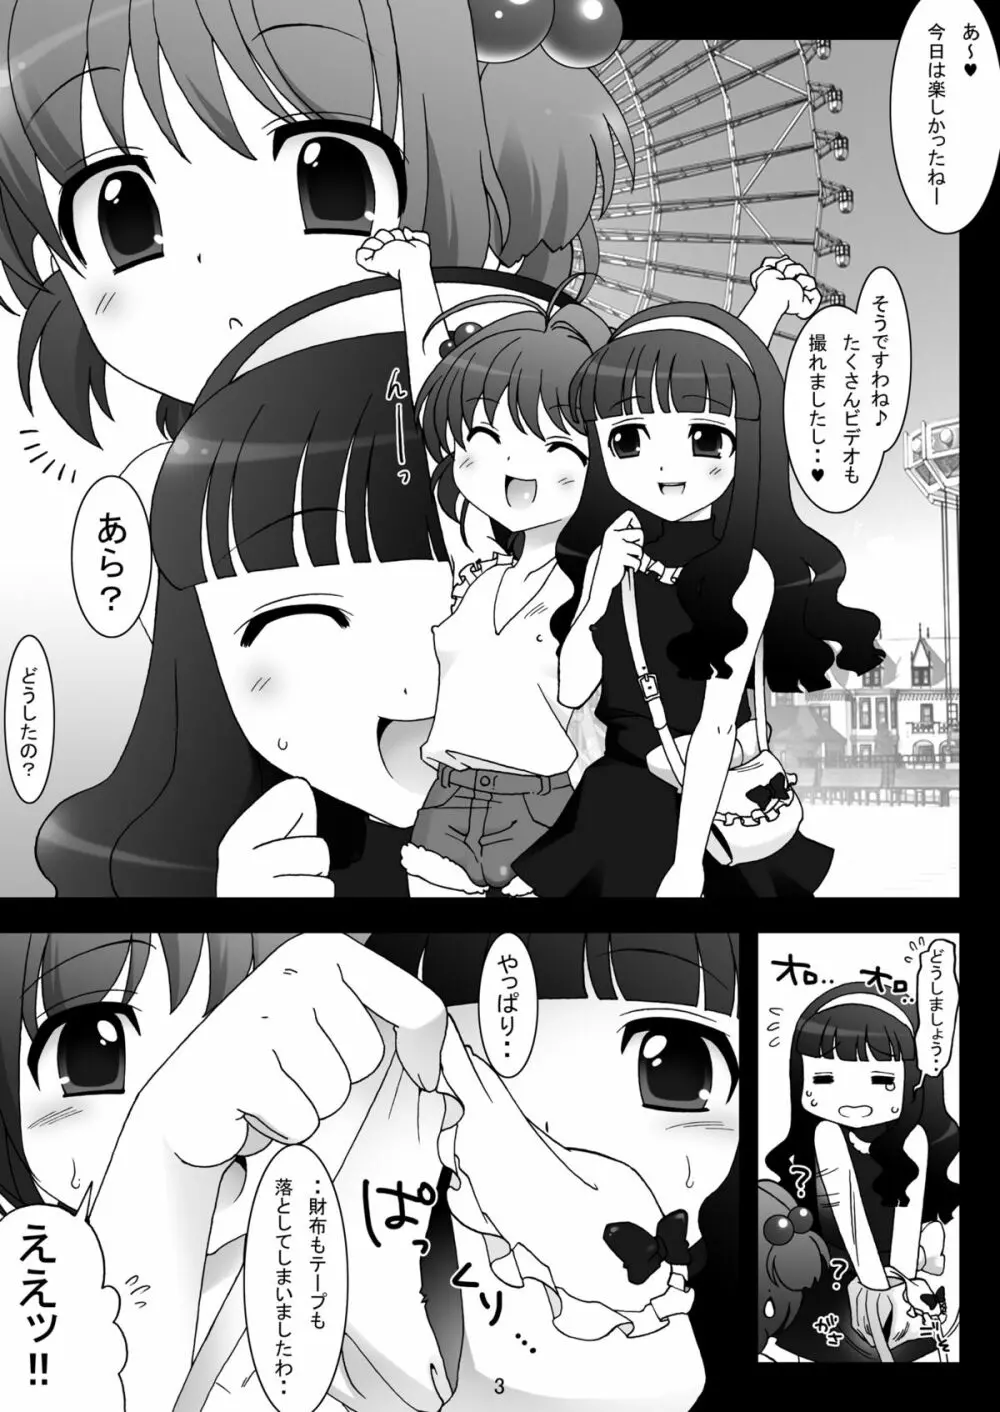 sakura twilight time - page3